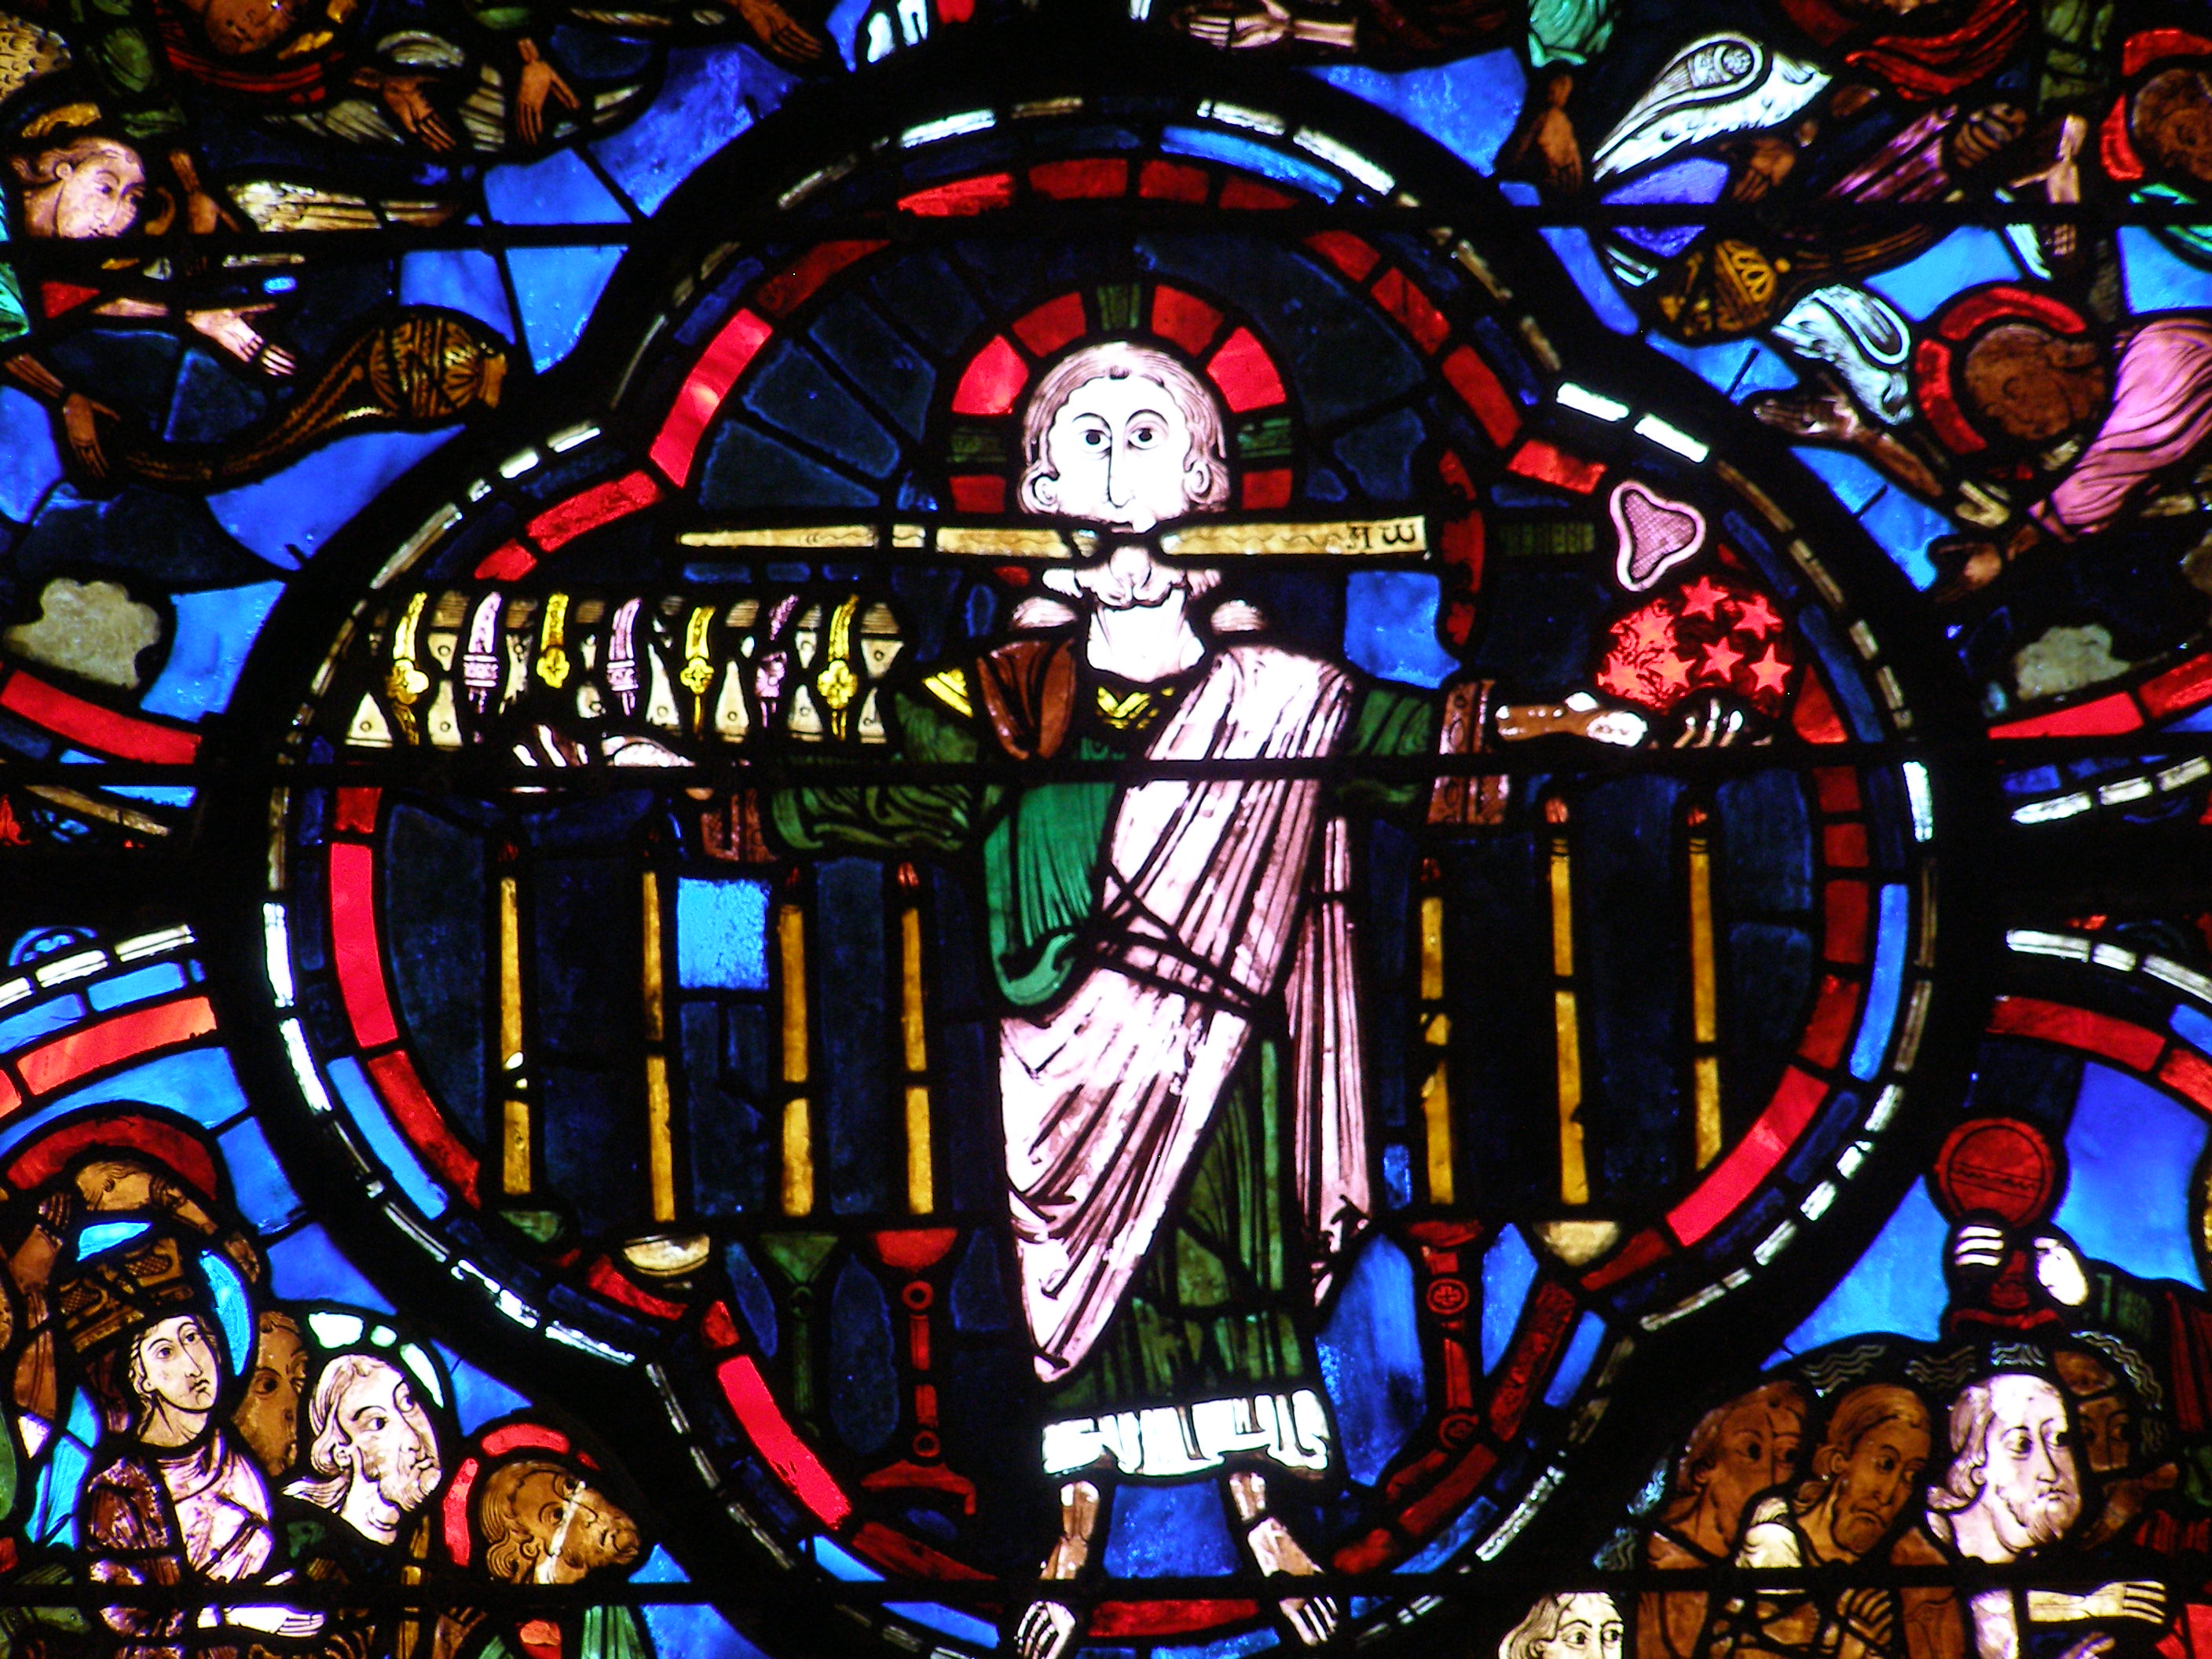 Le Christ tenant le livre aux 7 sceaux et les 7 étoiles, debout devant les 7 chandeliers – Vitrail de l’Apocalypse,  Cathédrale de Bourges.